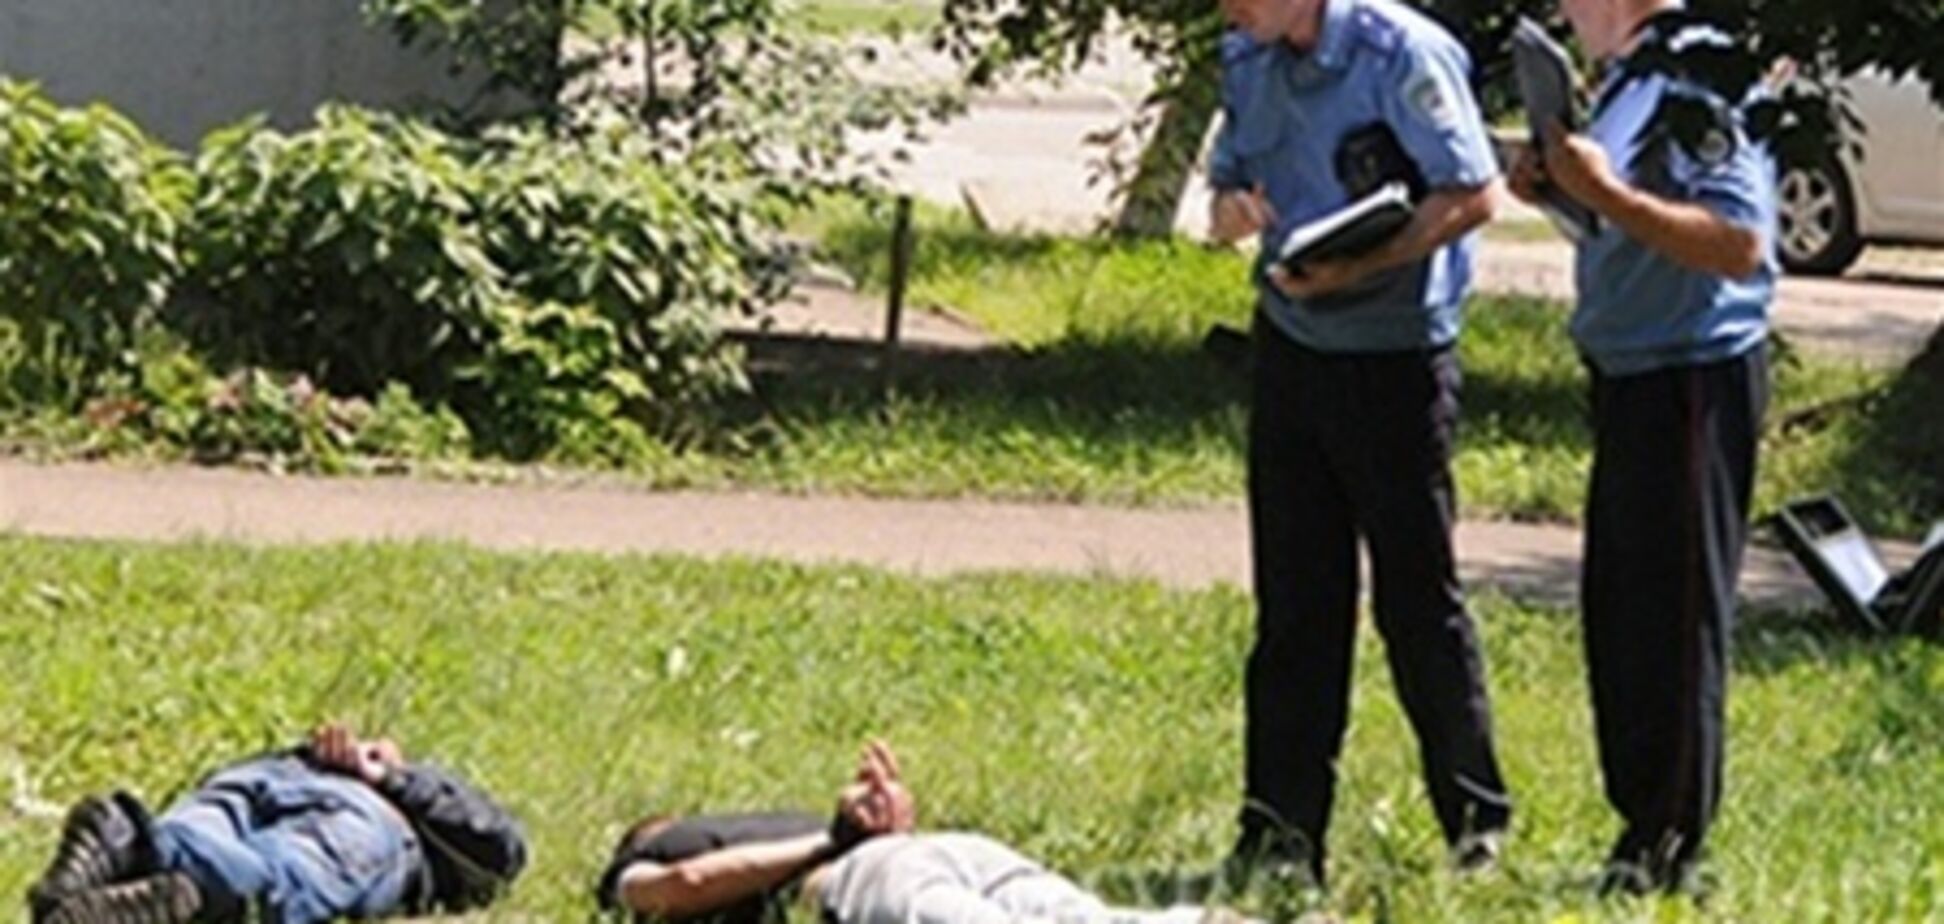 Возле киевского ЗАГСа задержали двух насильников - СМИ